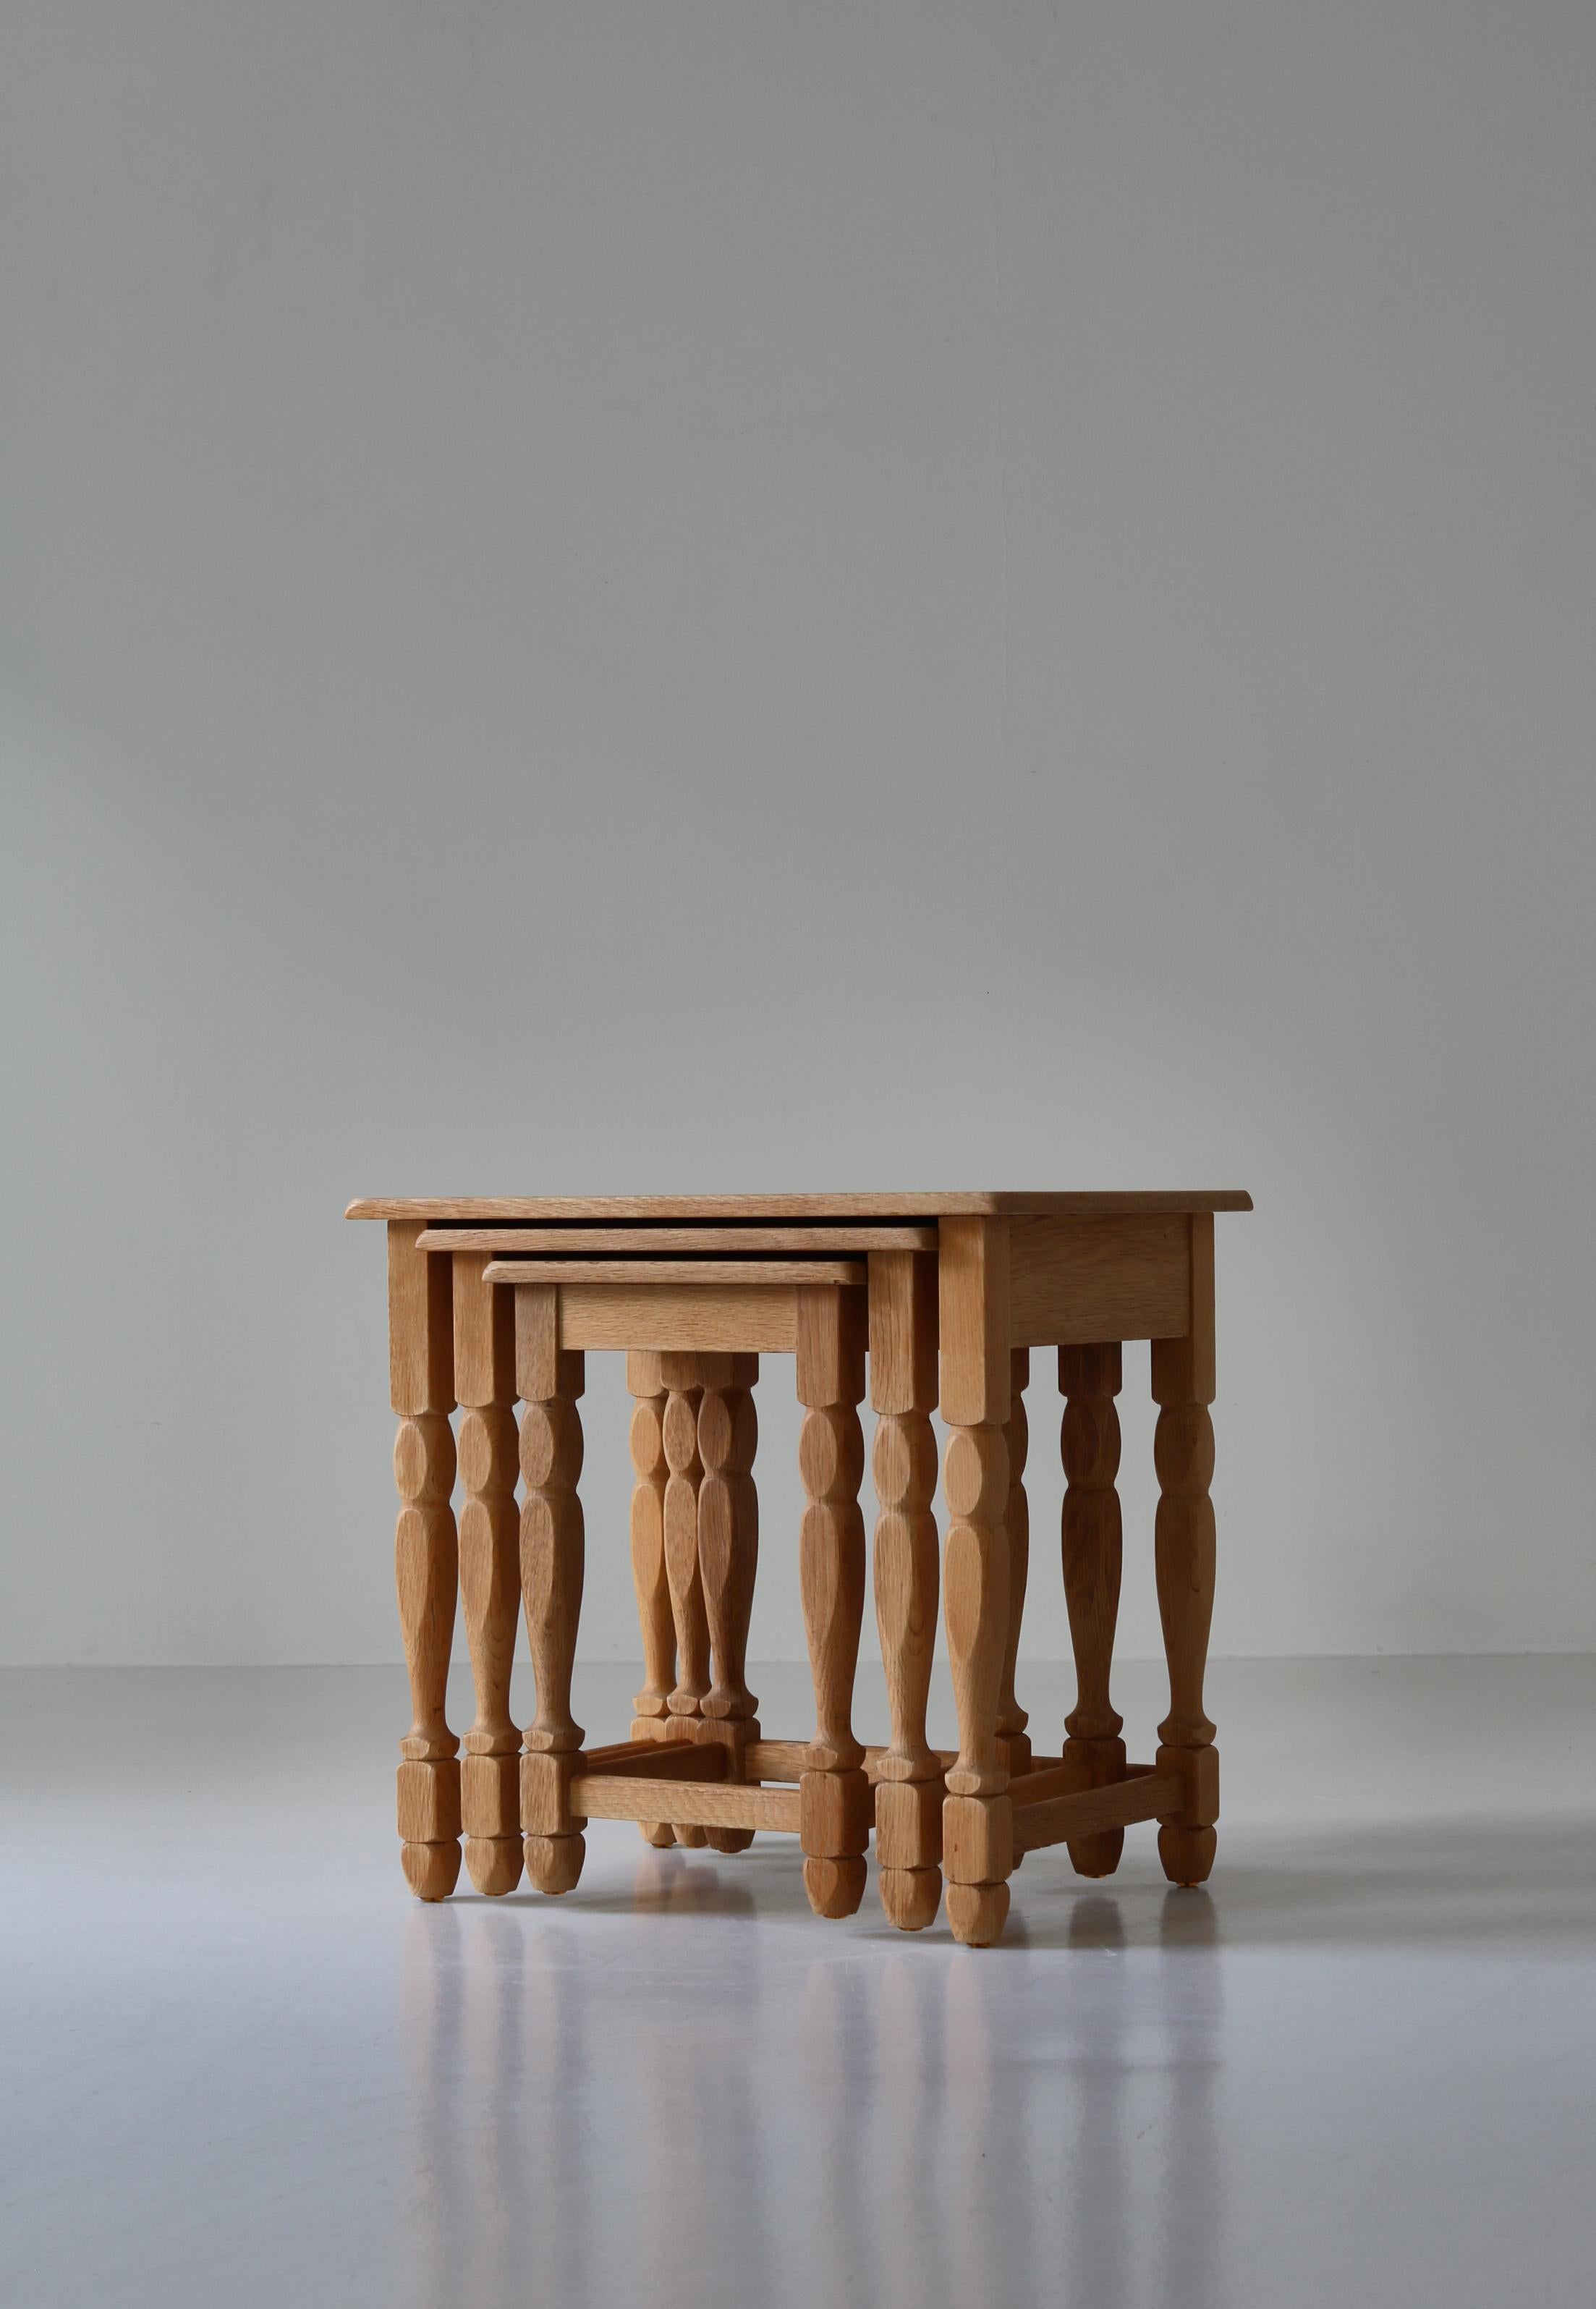 Ensemble de 3 tables gigognes en chêne massif scié sur quartier avec un grain et une patine magnifiques. Les tables ont été conçues par Henning Kjærnulf dans les années 1960 et fabriquées par EG Kvalitetsmøbel, au Danemark. Le style est moderne,